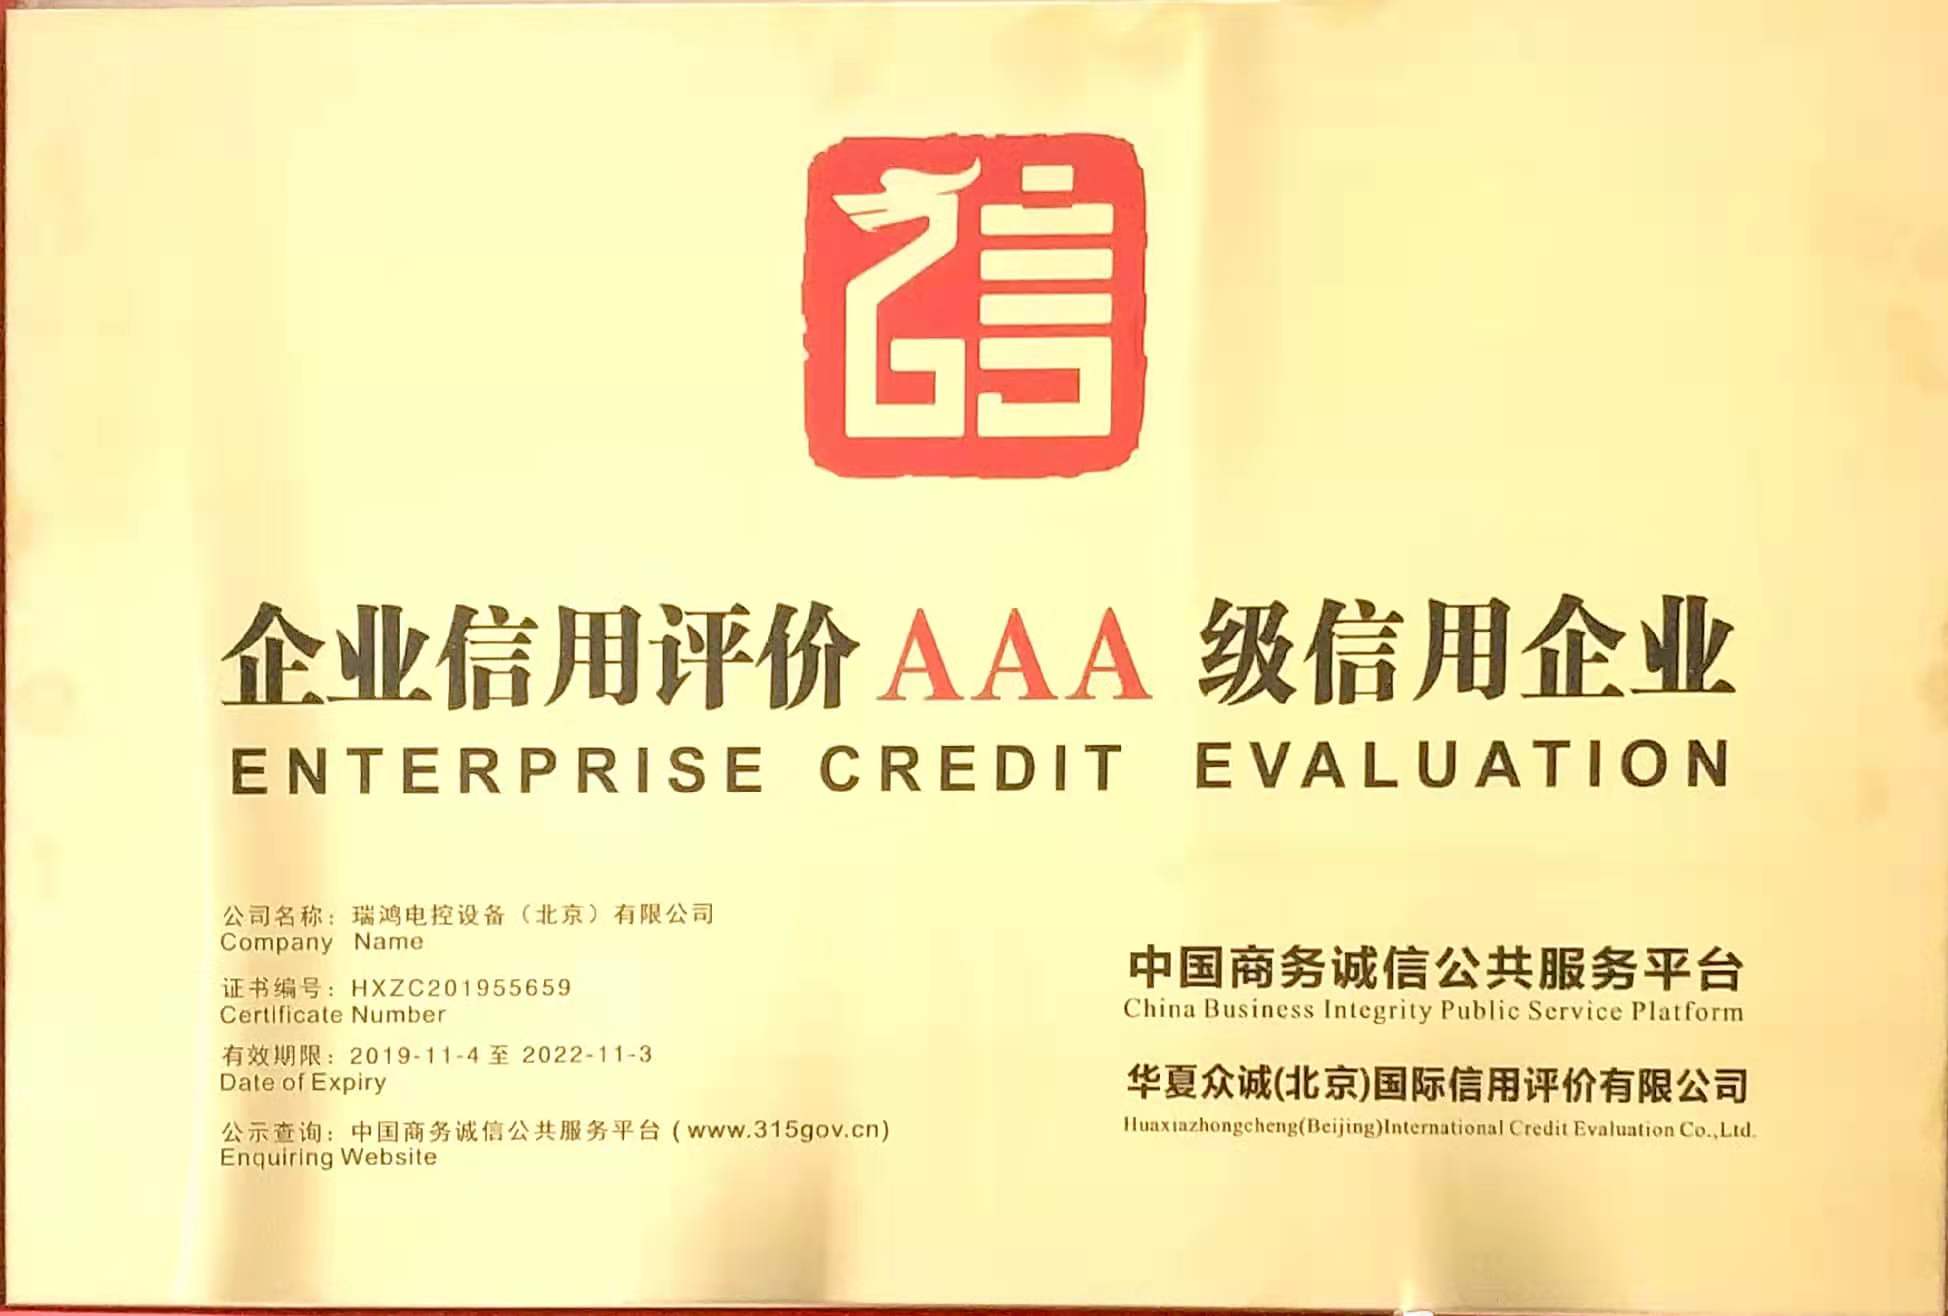 企业信用评价AAA级信用企业.jpg